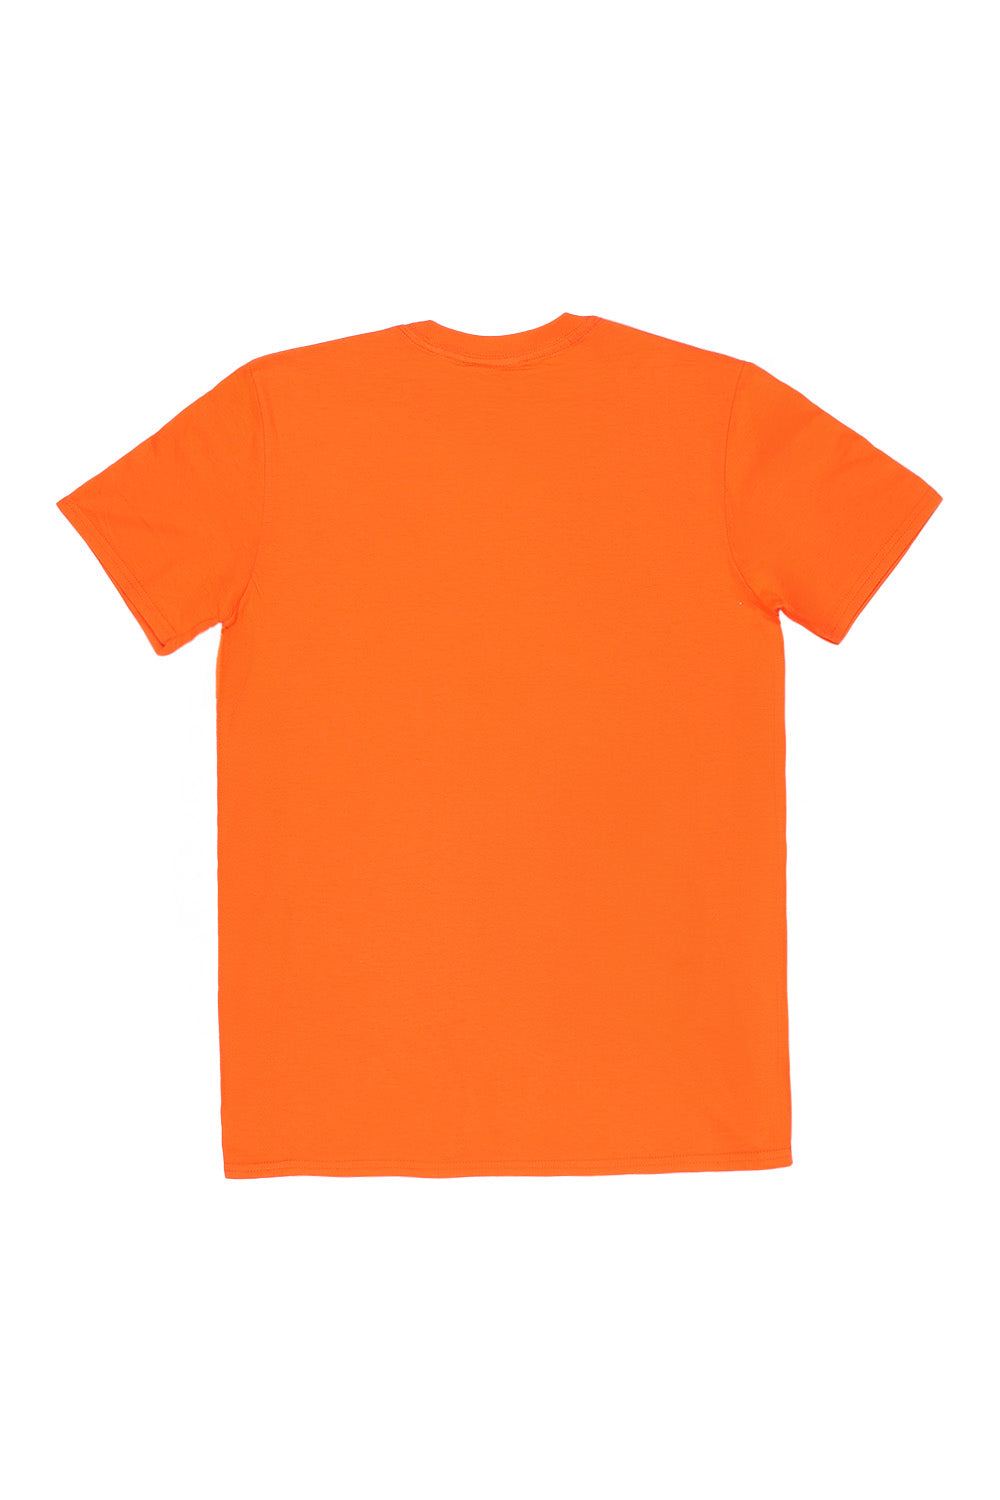 C'est La Vie Paris Slogan T-Shirt In Orange (Custom Pack)